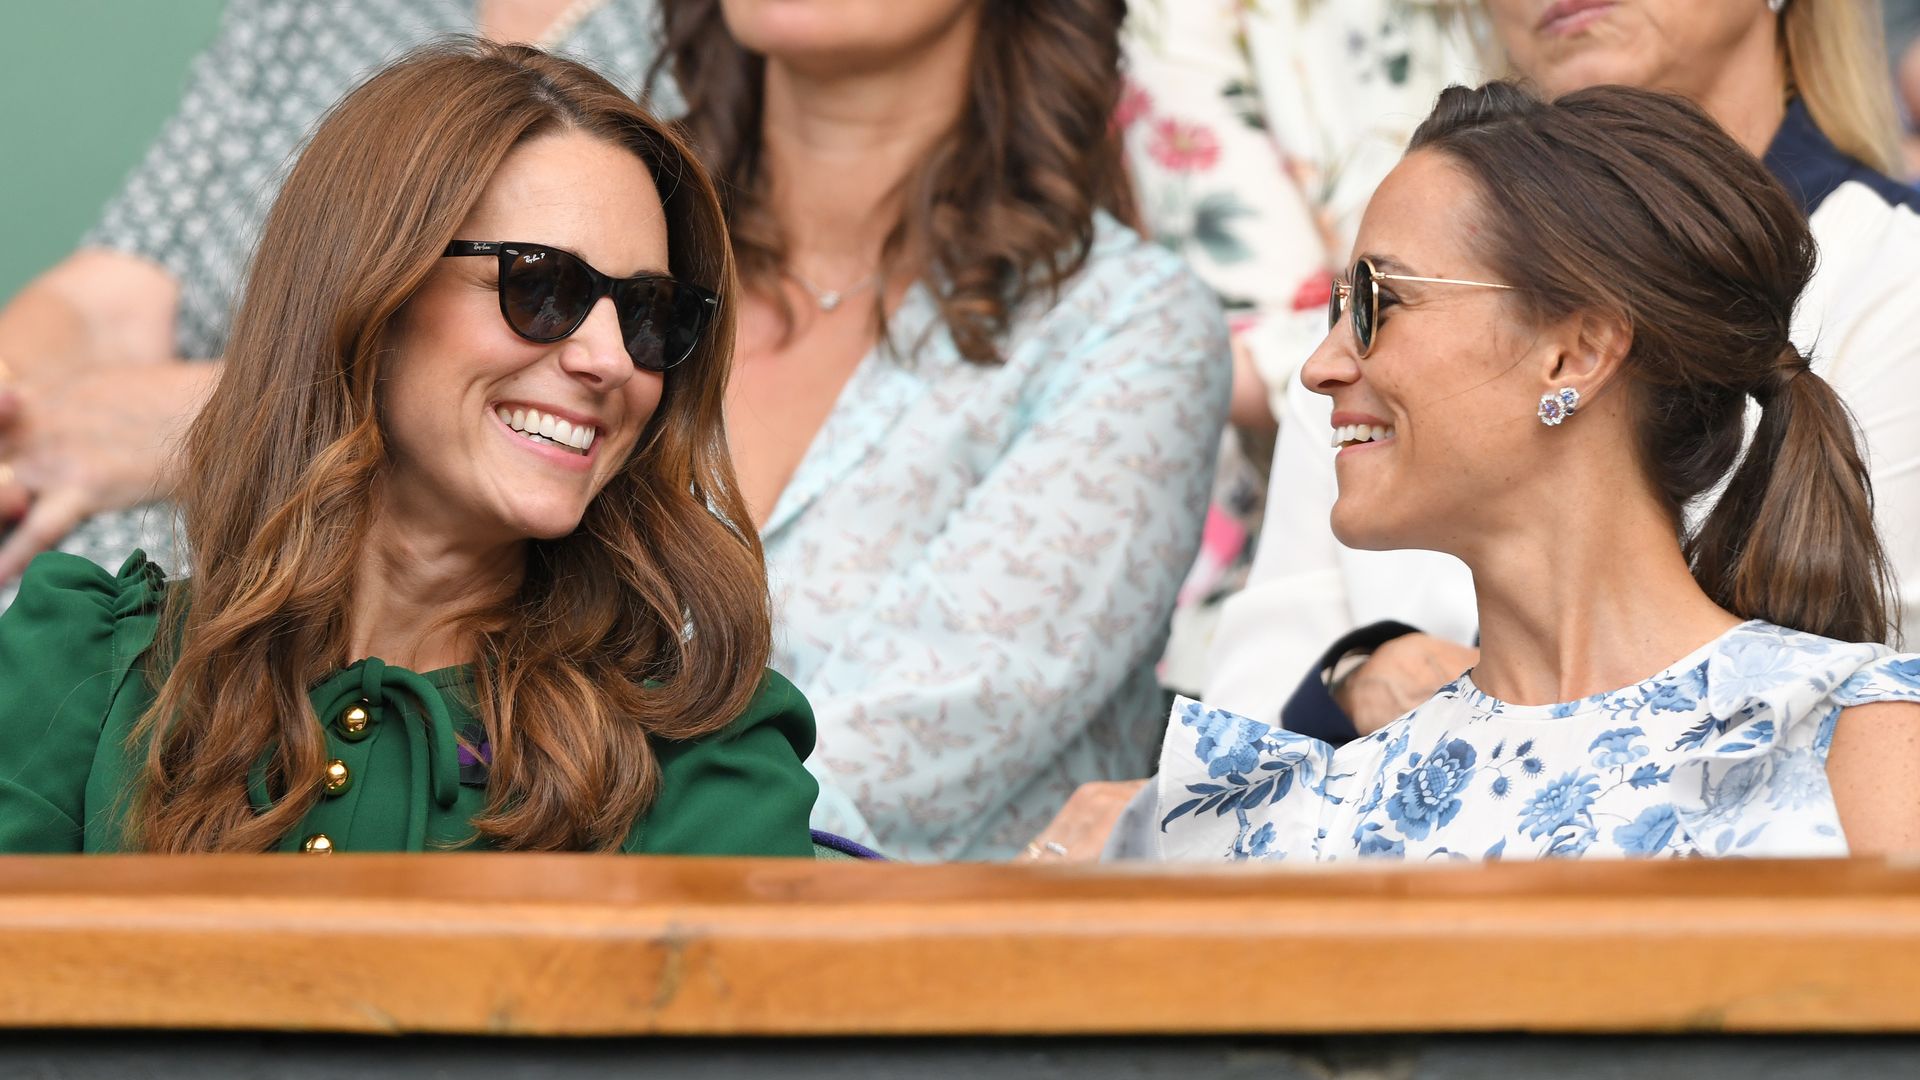 Kate Middleton and Pippa Middleton at Wimbledon 2019